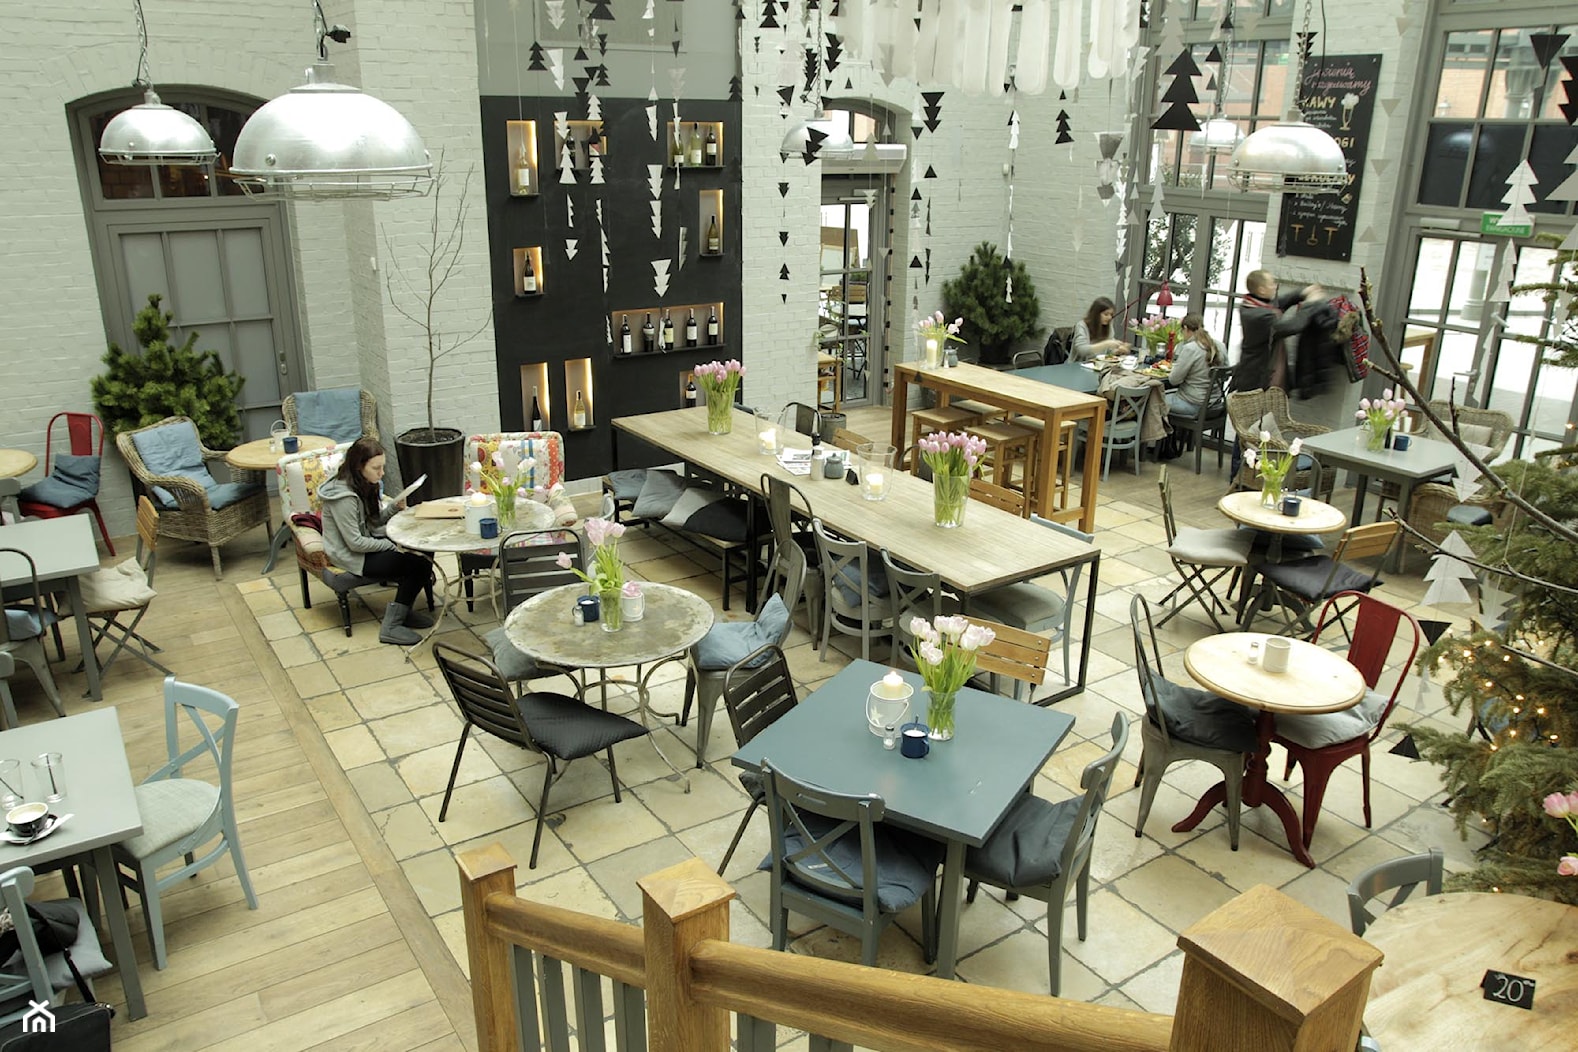 Weranda Lunch & Wine - Wnętrza publiczne, styl industrialny - zdjęcie od R2D2kolektyw - Homebook